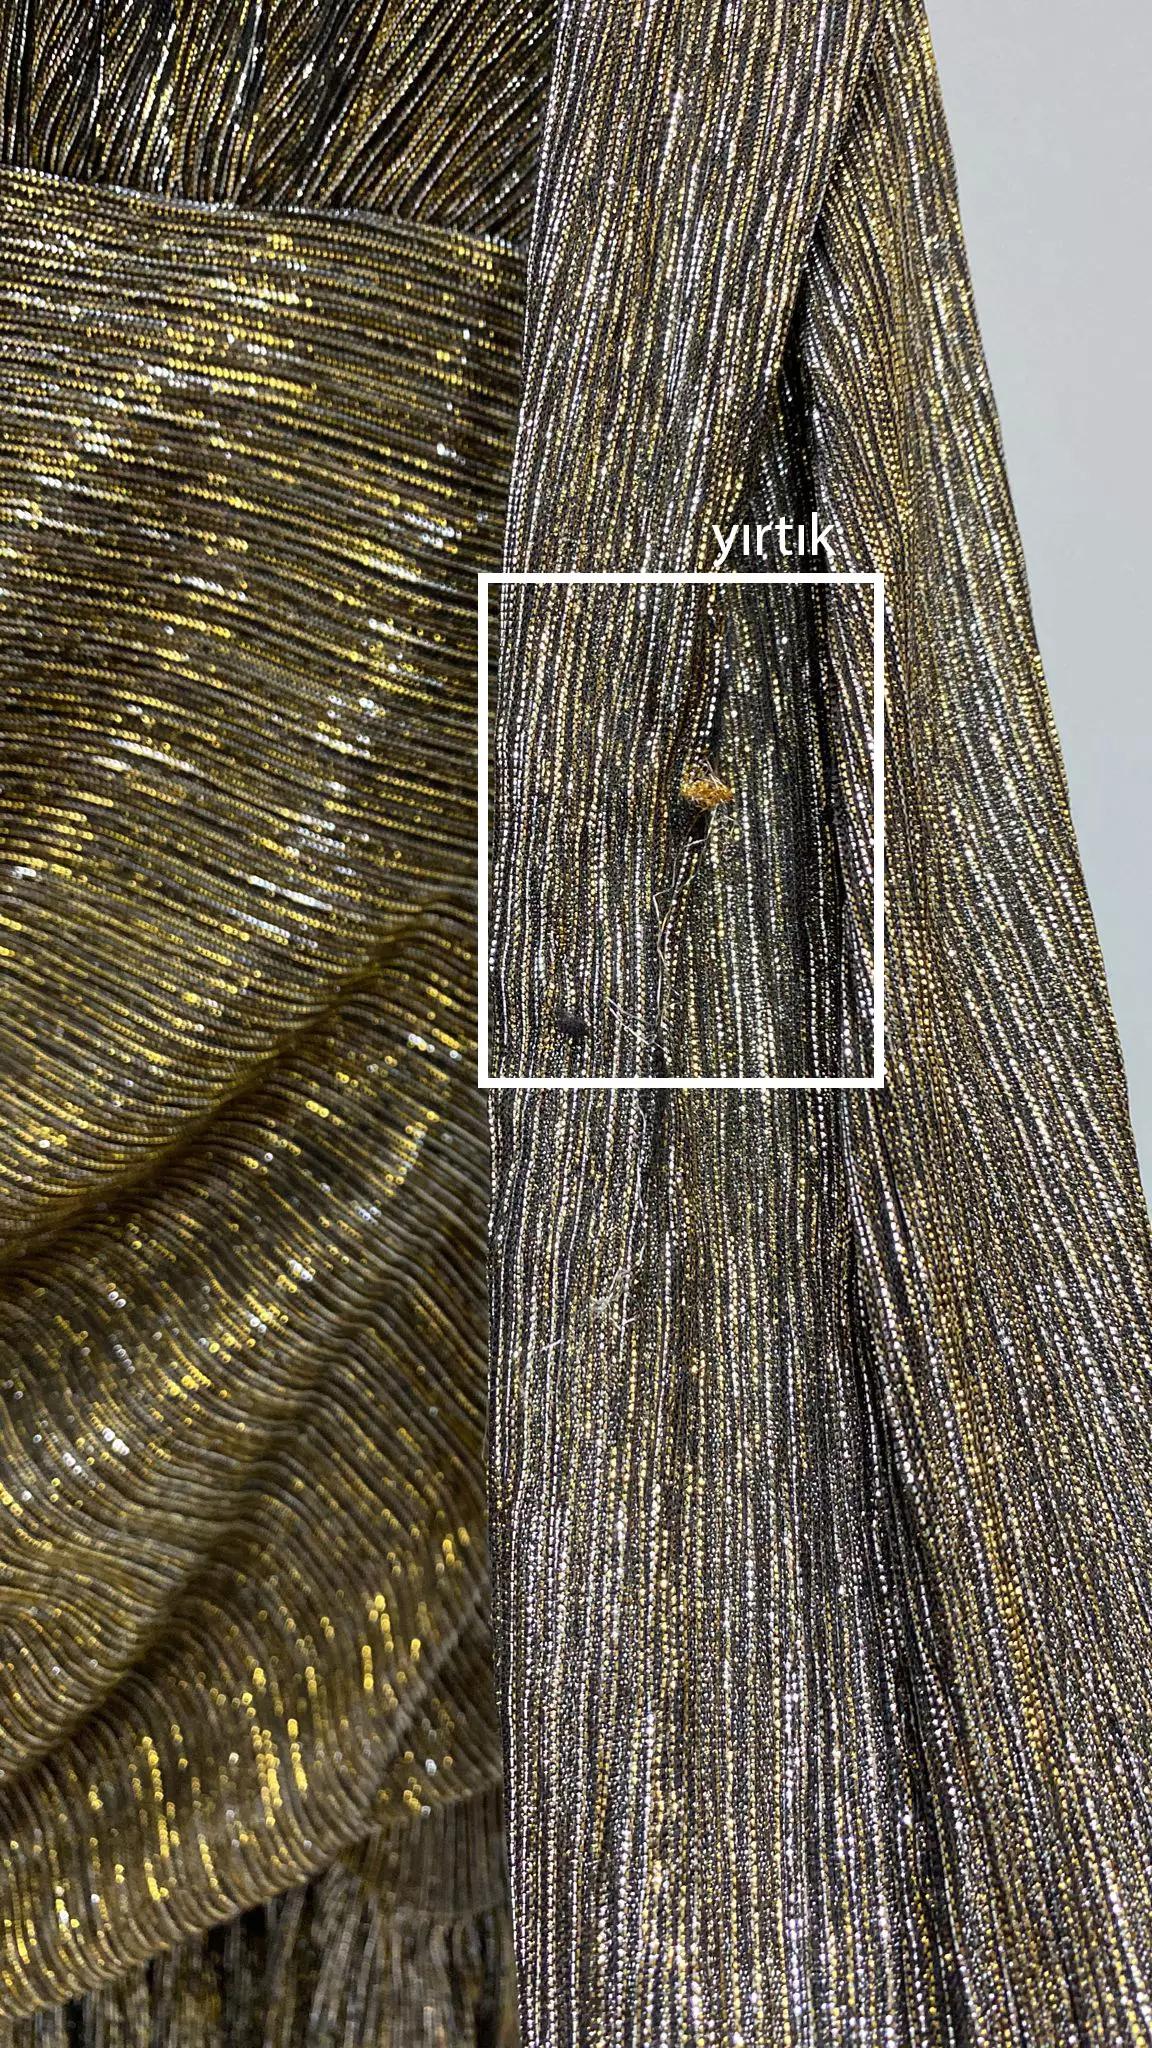 Siyah altın sparky long sleeve mini dress